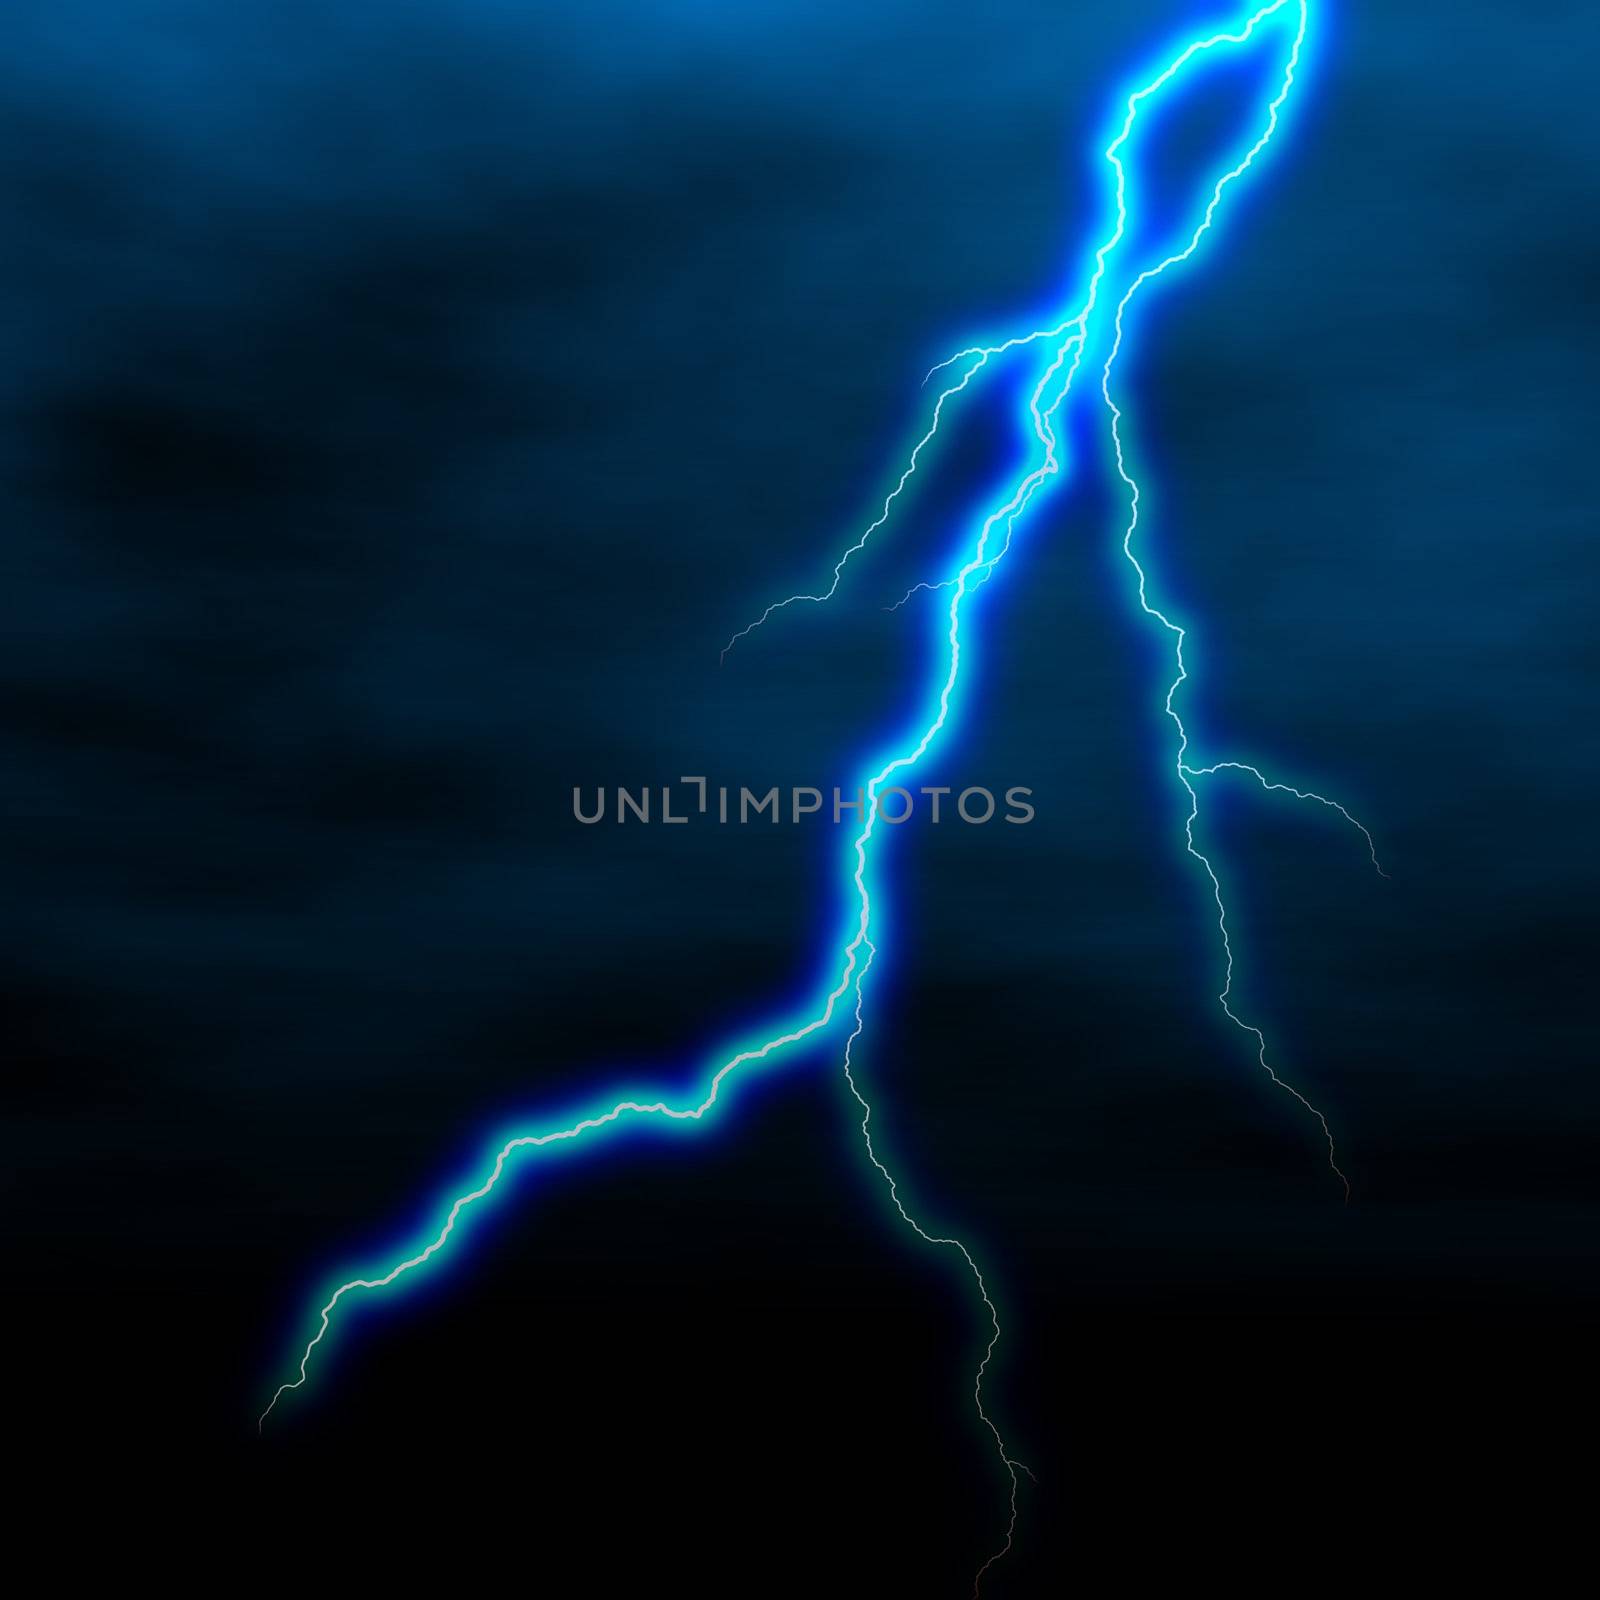 electrical white blue lightning over dark sky